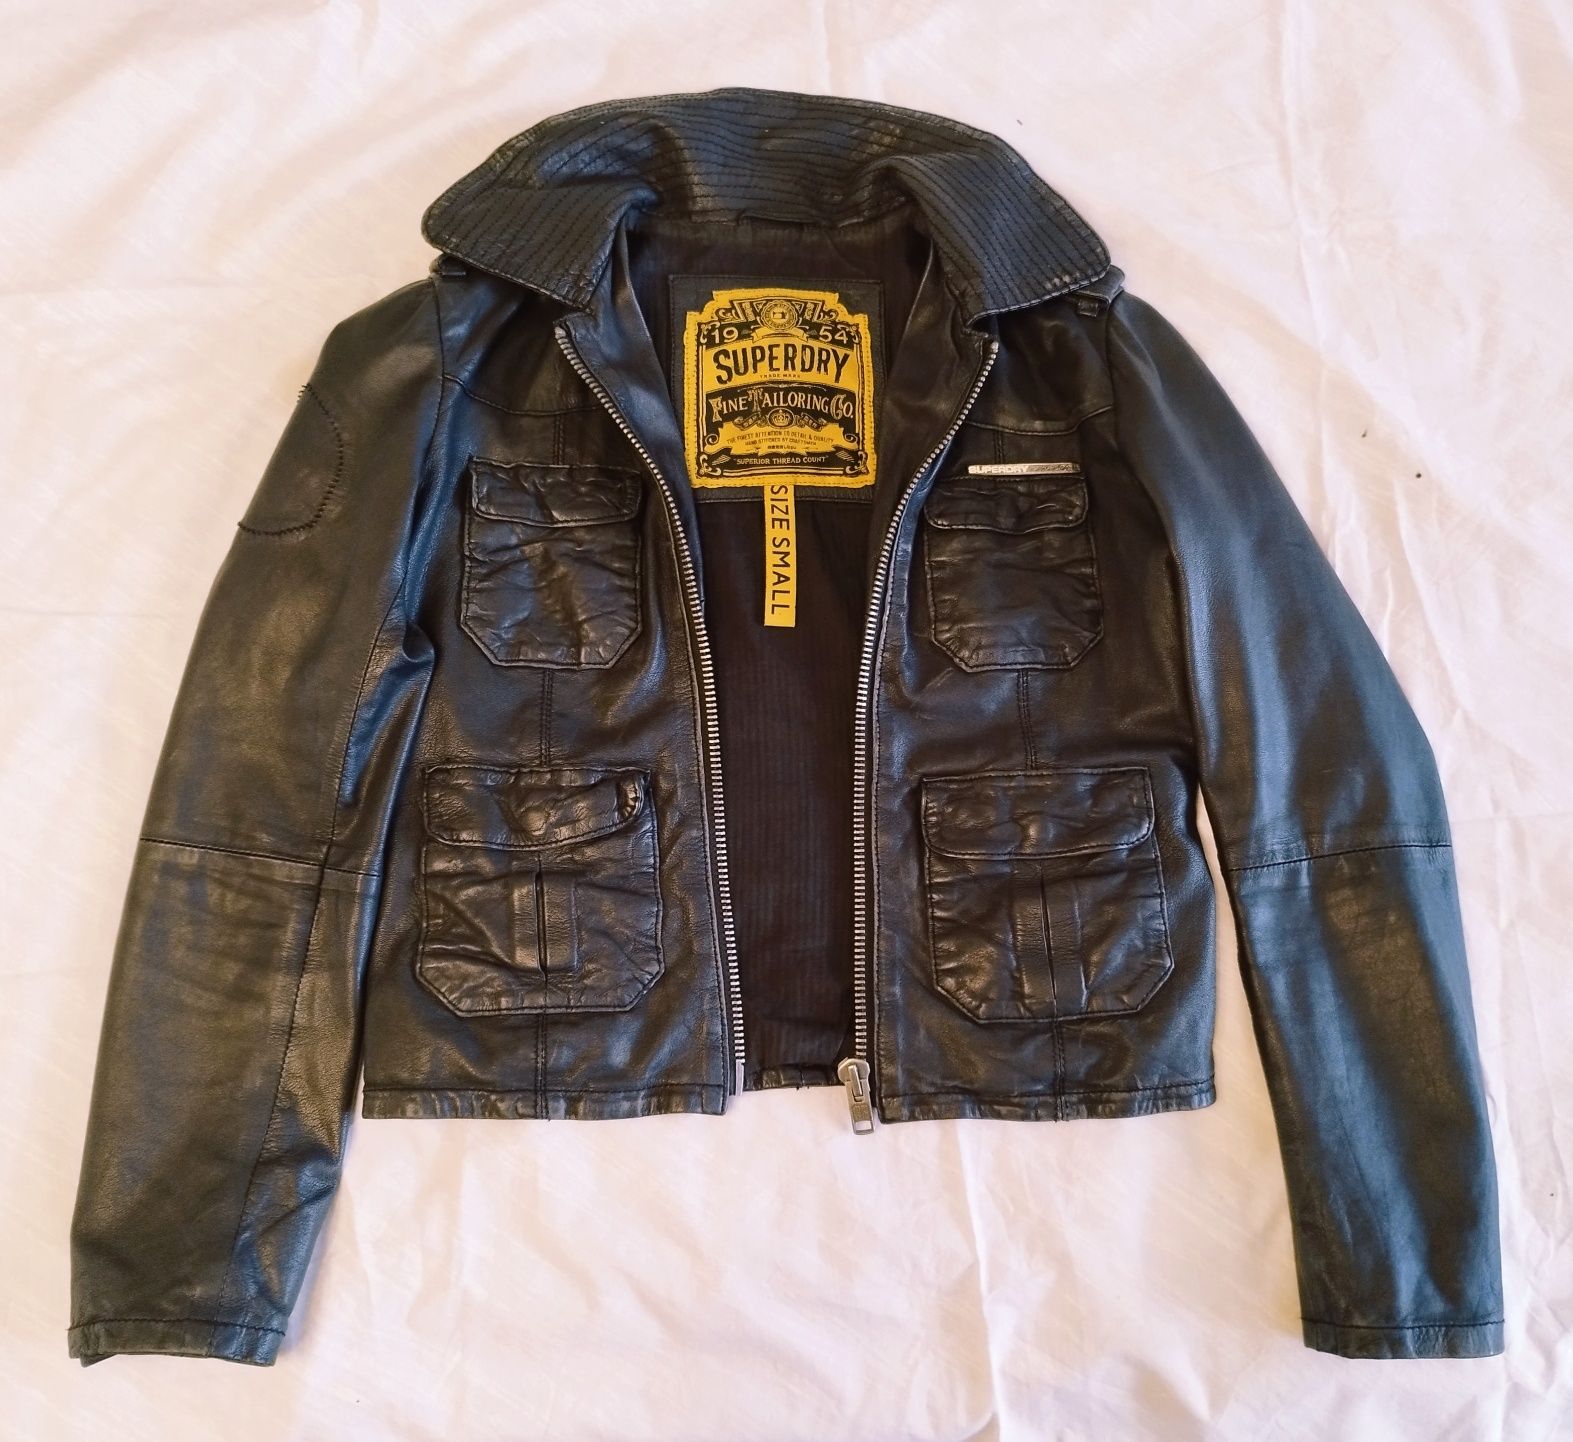 Jachetă de damă Superdry 1954, biker din piele, mărimea S.

Descriere: